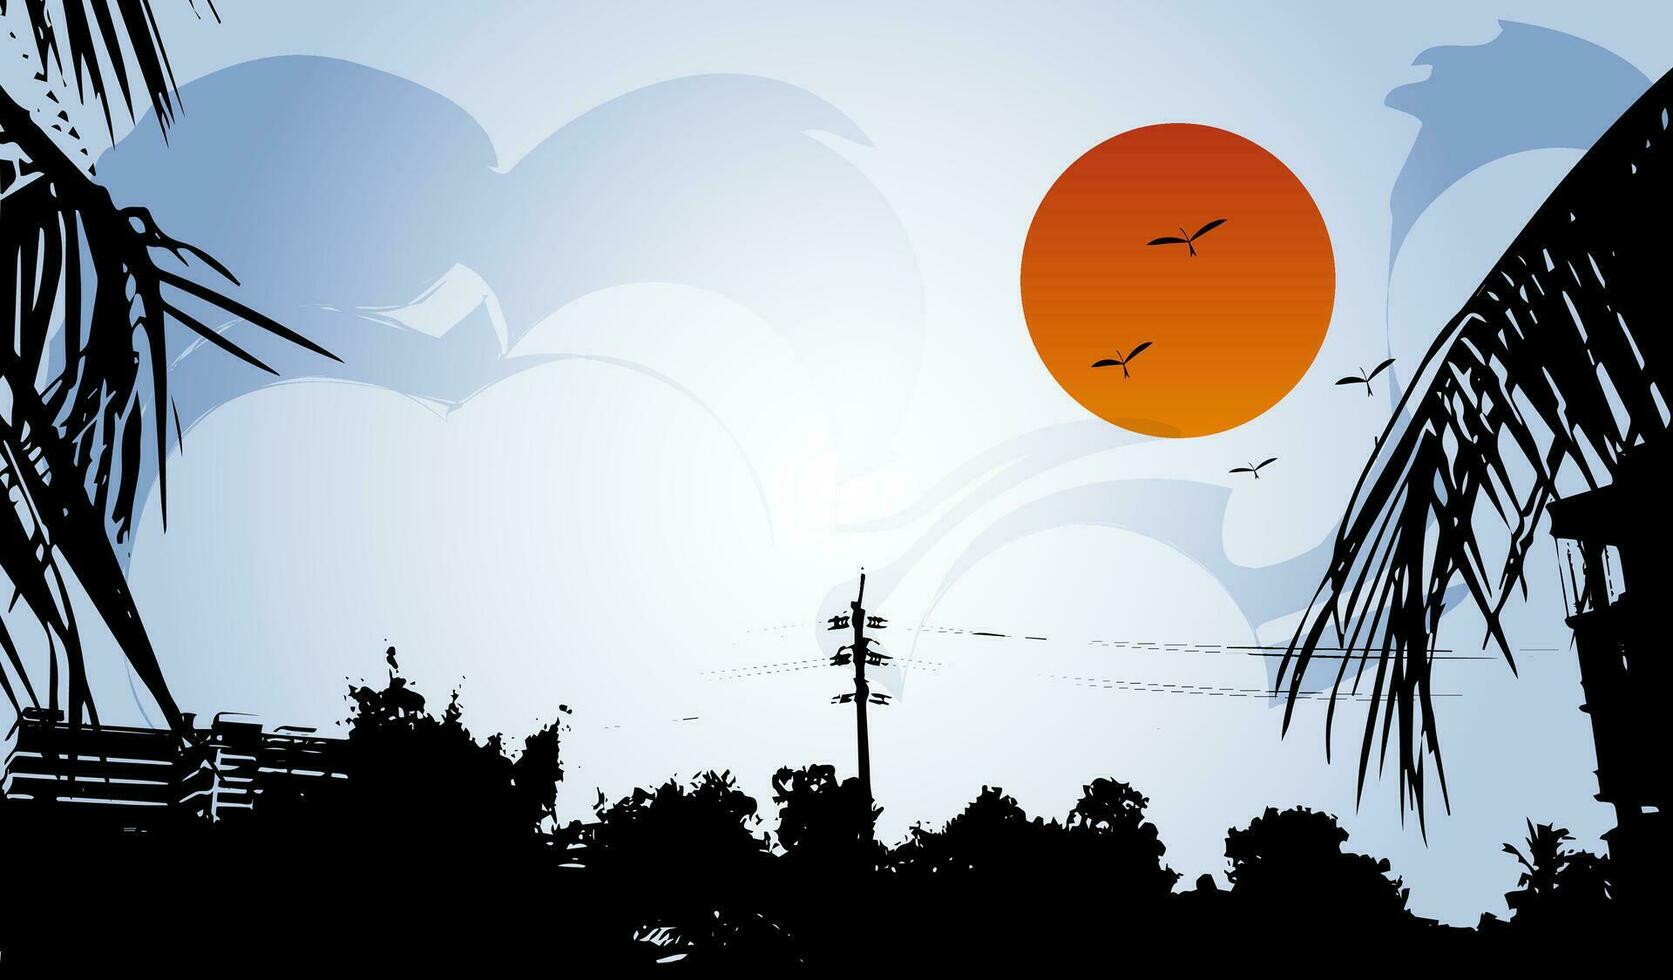 un puesta de sol con palma arboles y aves volador terminado él, rama, sol, cielo, naturaleza, árbol, atardecer, oscuro, otoño, exterior, paisaje, montañas, amarillo, montaña, murciélago, vector, arte, naranja, escalofriante, luna, vector